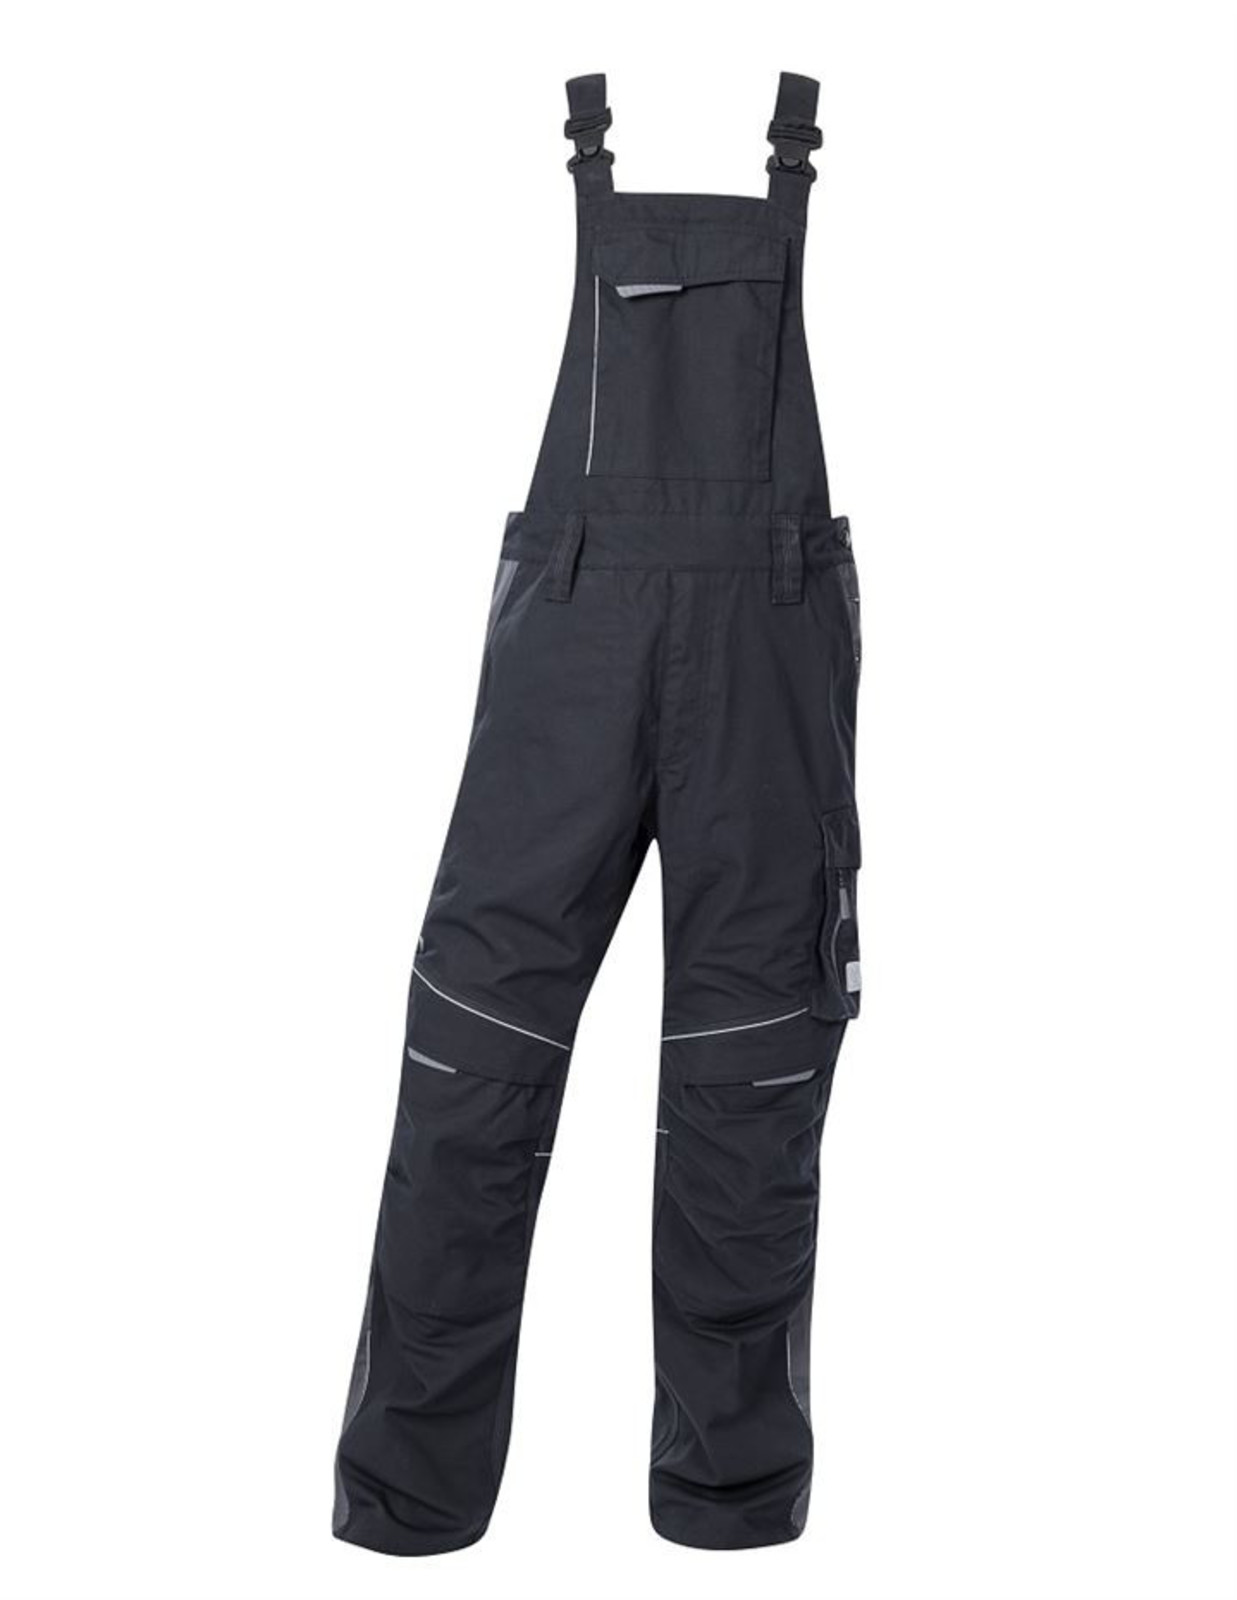 Pracovné nohavice na traky Ardon Urban+ - veľkosť: 58, farba: čierna/sivá